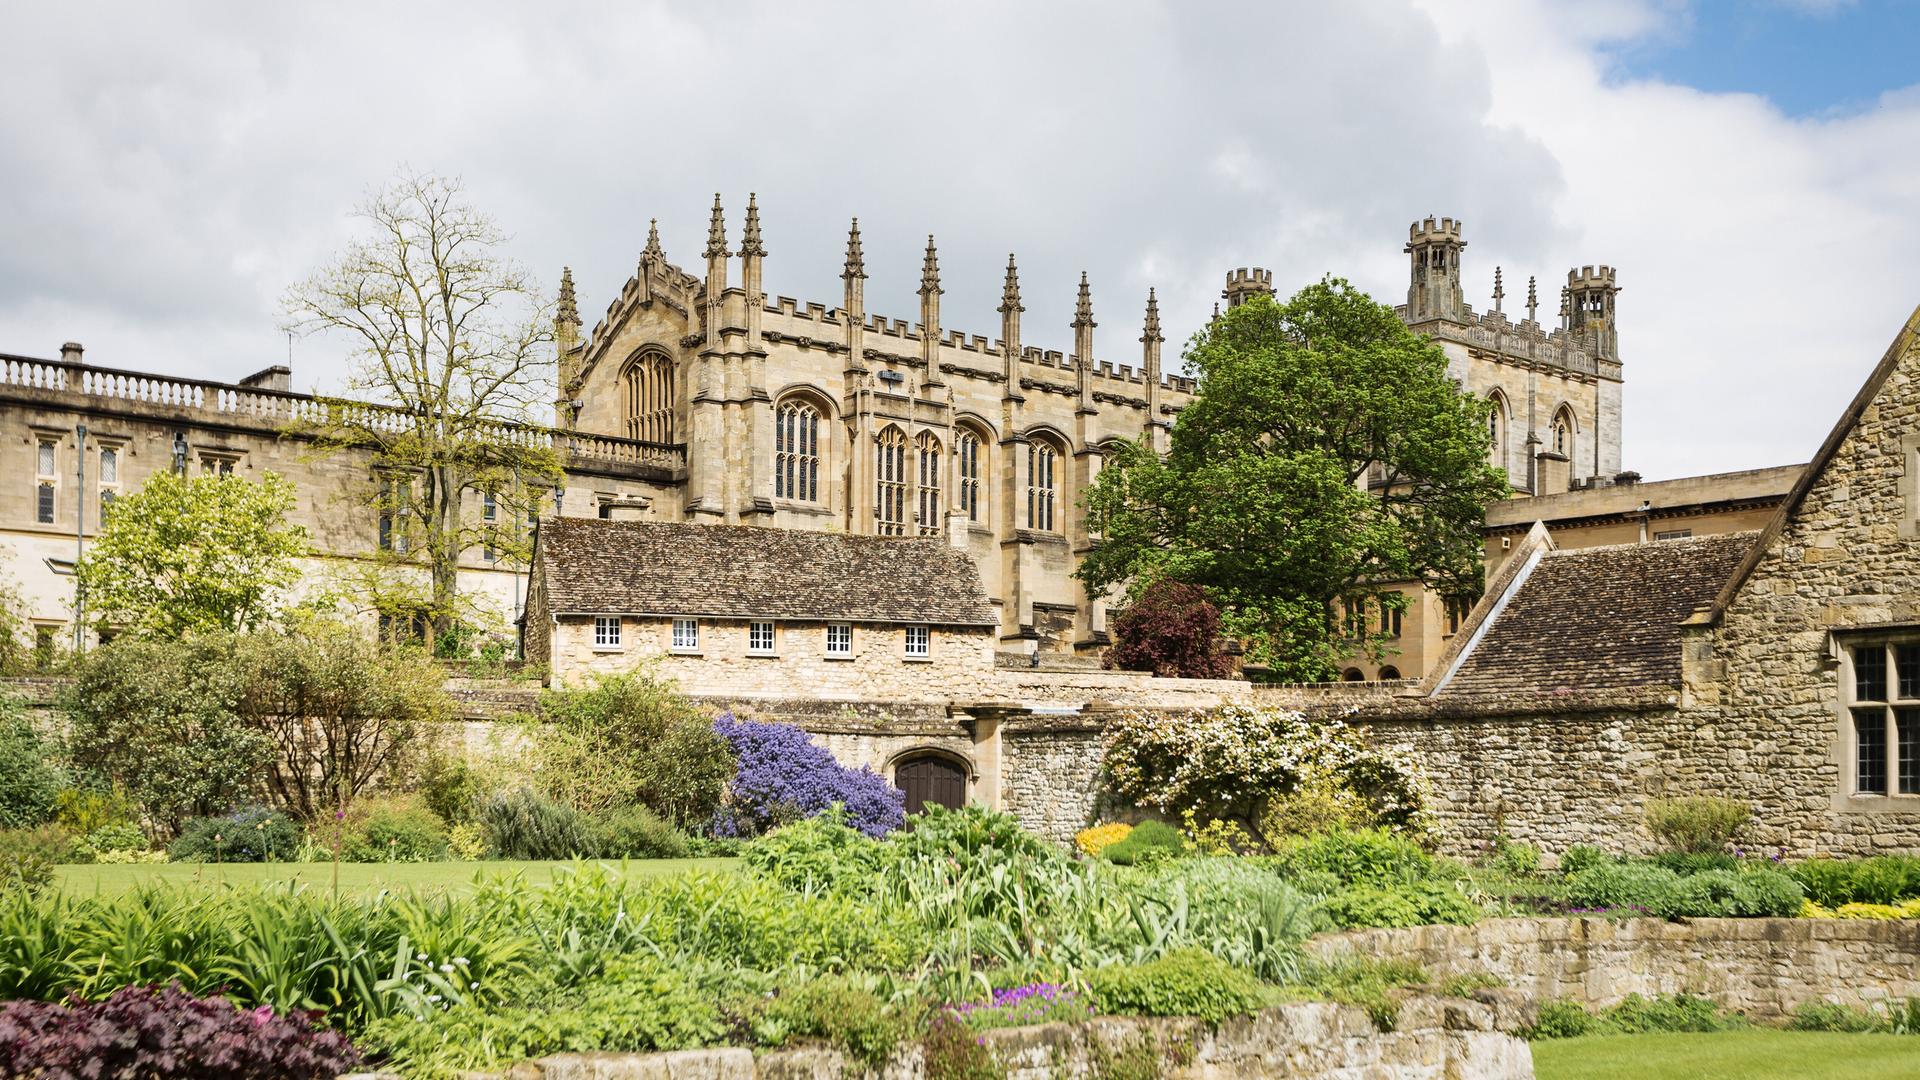 Eine aktuelle Aufnahme zeigt das historische Gebäude des Christ Church College in Oxford inmitten von Blumenrabatten und Bäumen.